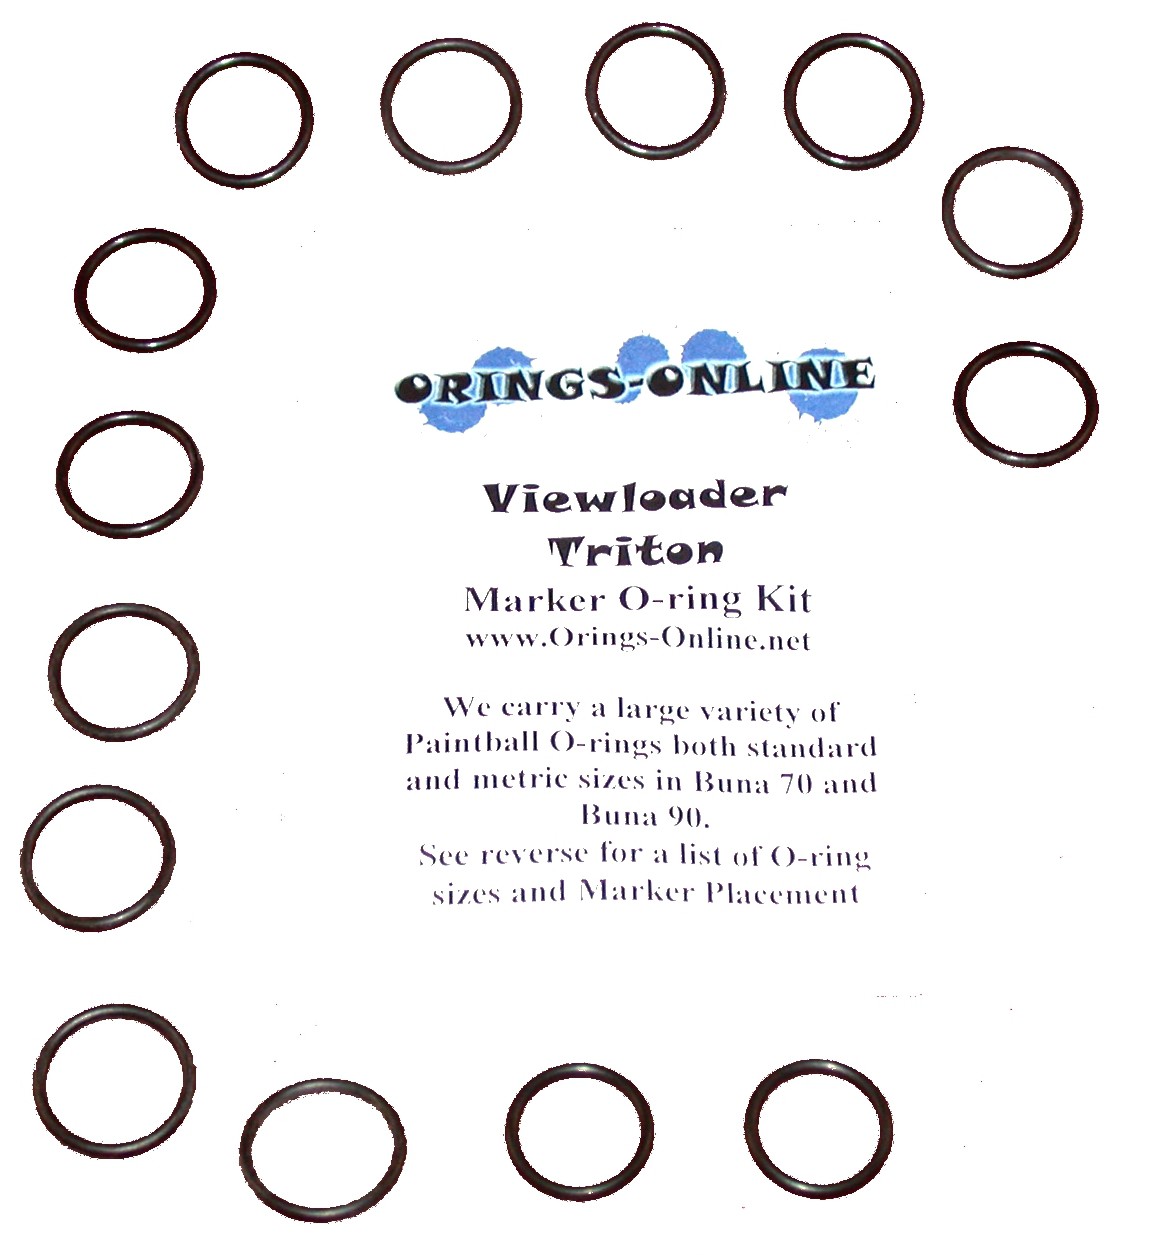 Viewloader Triton Marker O-ring Kit